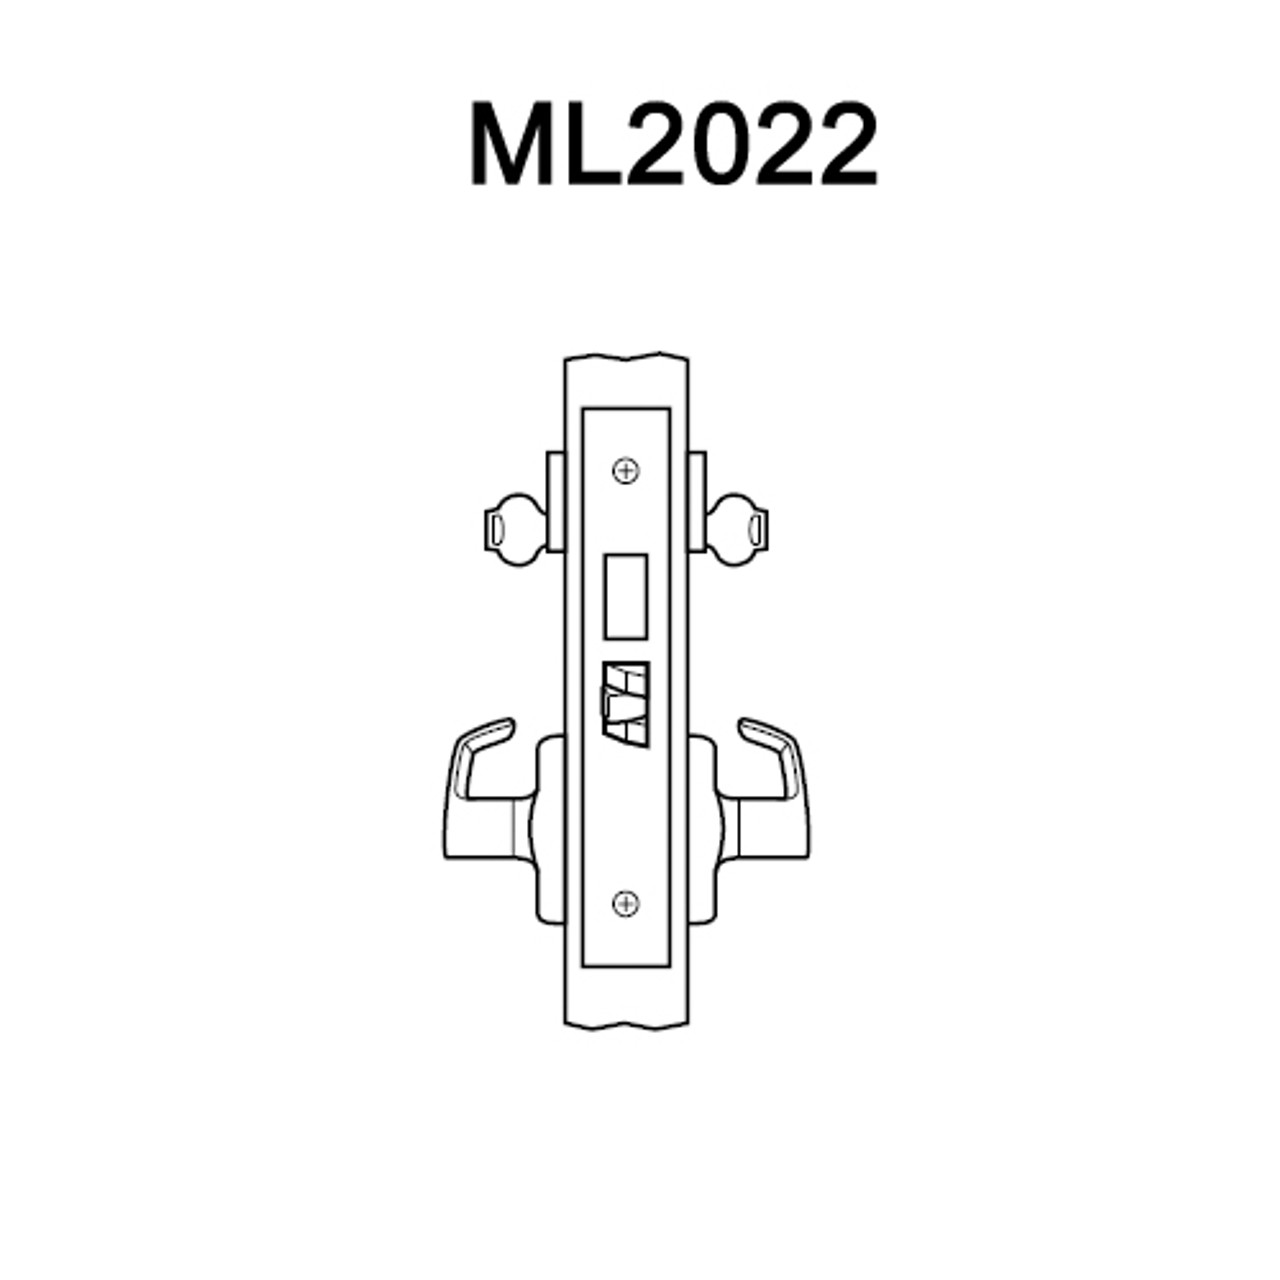 ML2022-RSM-619 Corbin Russwin ML2000 Series Mortise Store Door Locksets with Regis Lever with Deadbolt in Satin Nickel